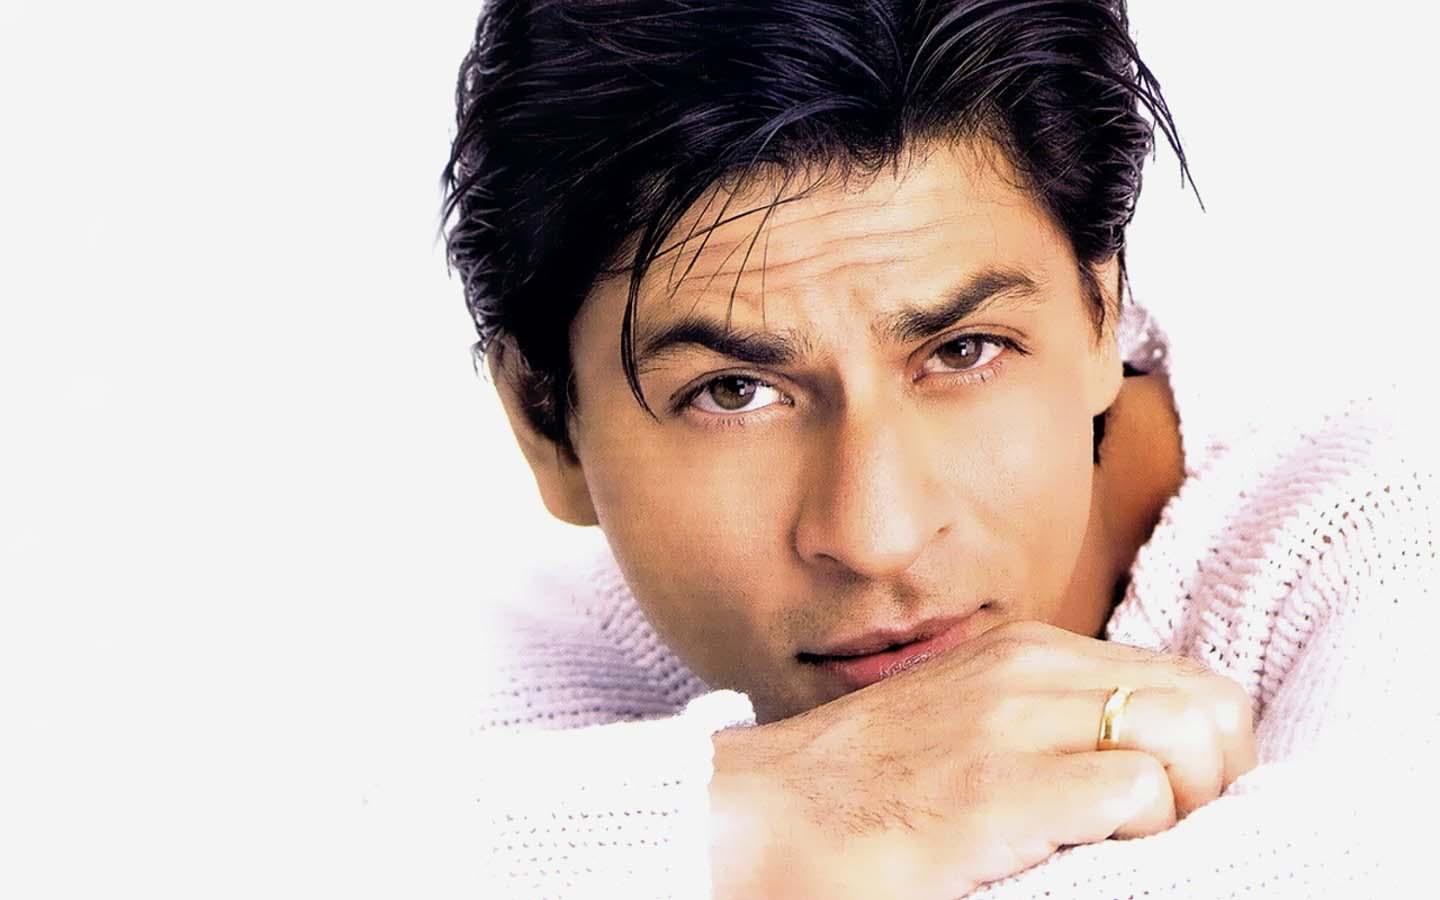 Girls love my eyes, says Shah Rukh Khan | InstaMag